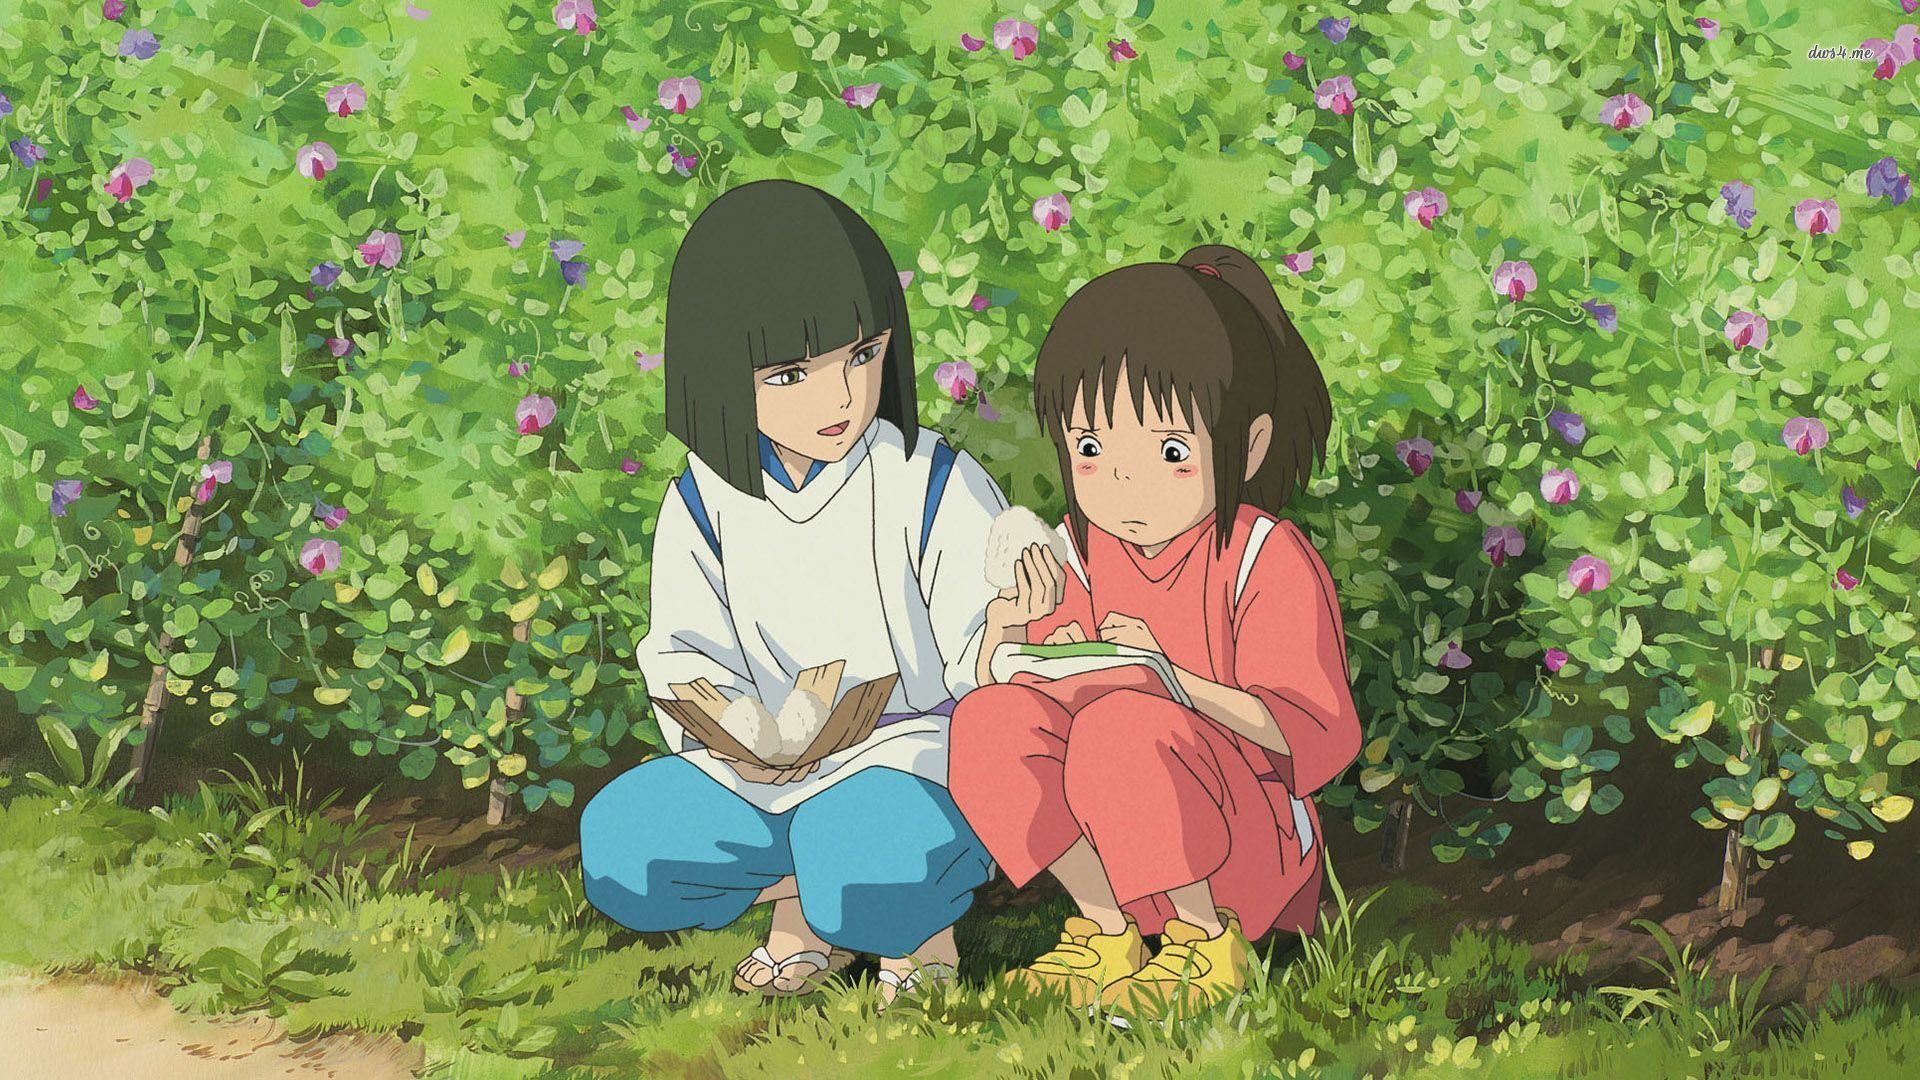 Ecco la classifica dei film di Hayao Miyazaki dal peggiore al migliore